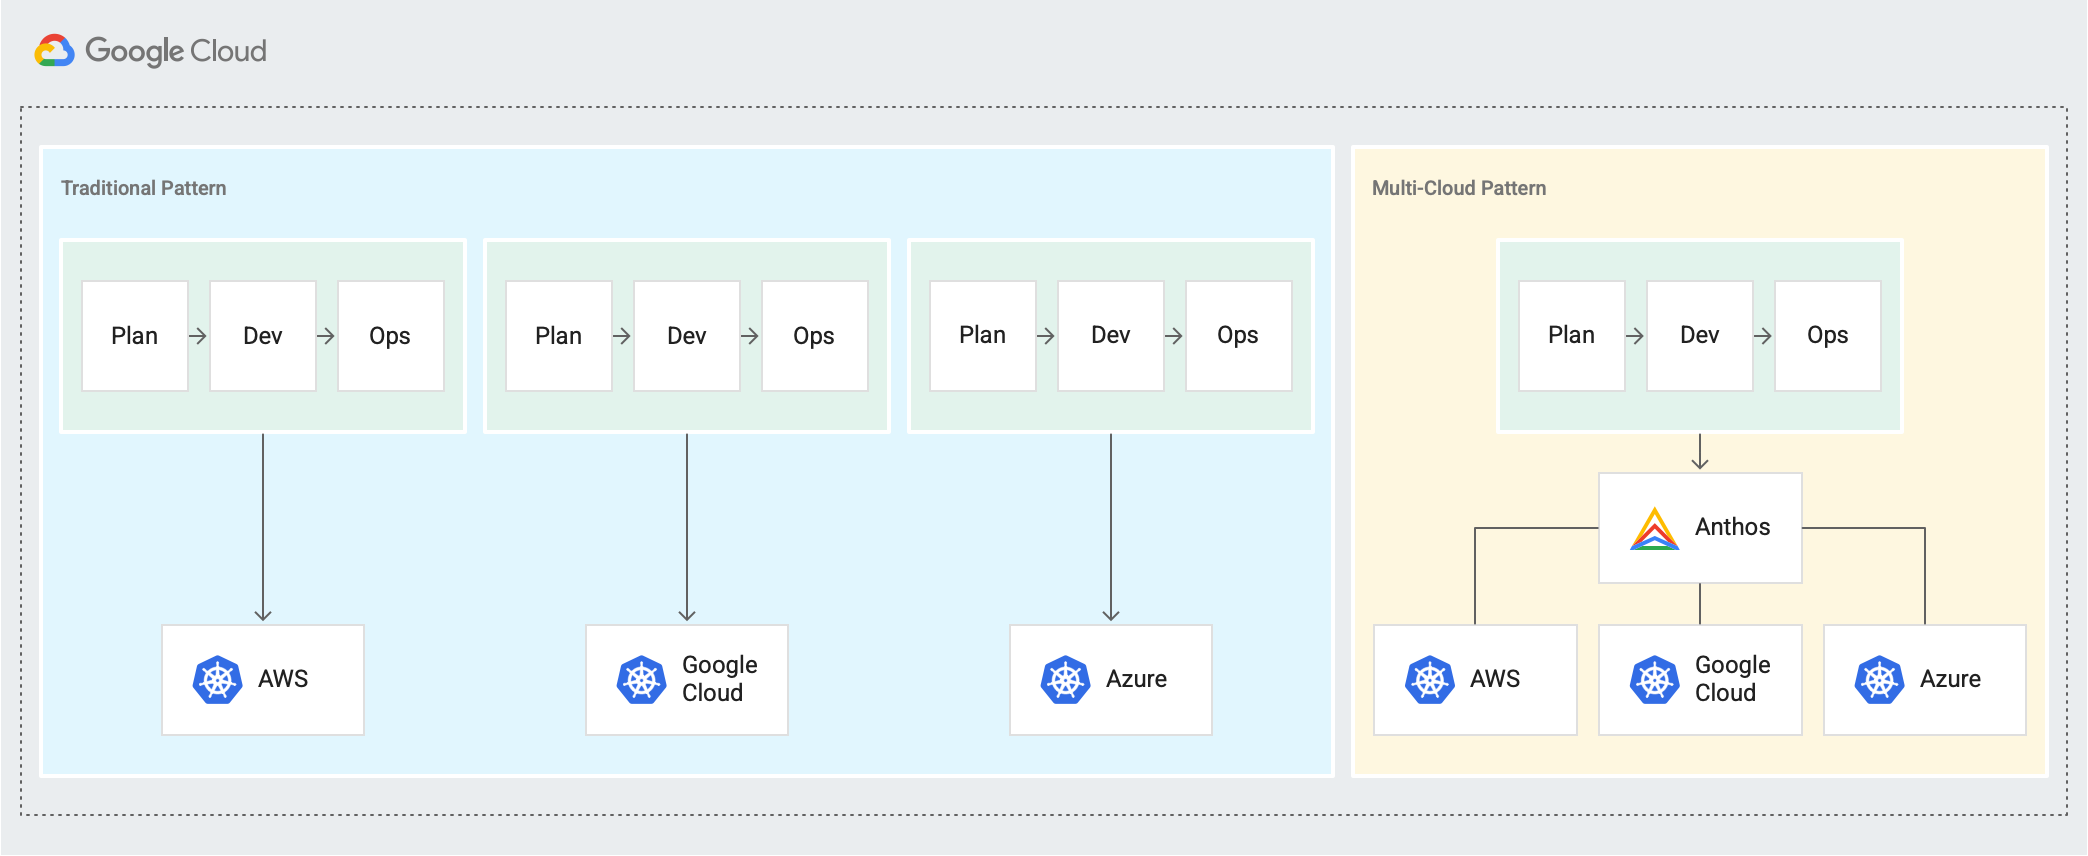 Mostra un pattern tradizionale di piano separato → sviluppo → opera cicli per AWS, Google Cloud e Azure e un nuovo pattern multi-cloud in cui i cicli Piano → Sviluppa → Operate sono connessi tramite Anthos.